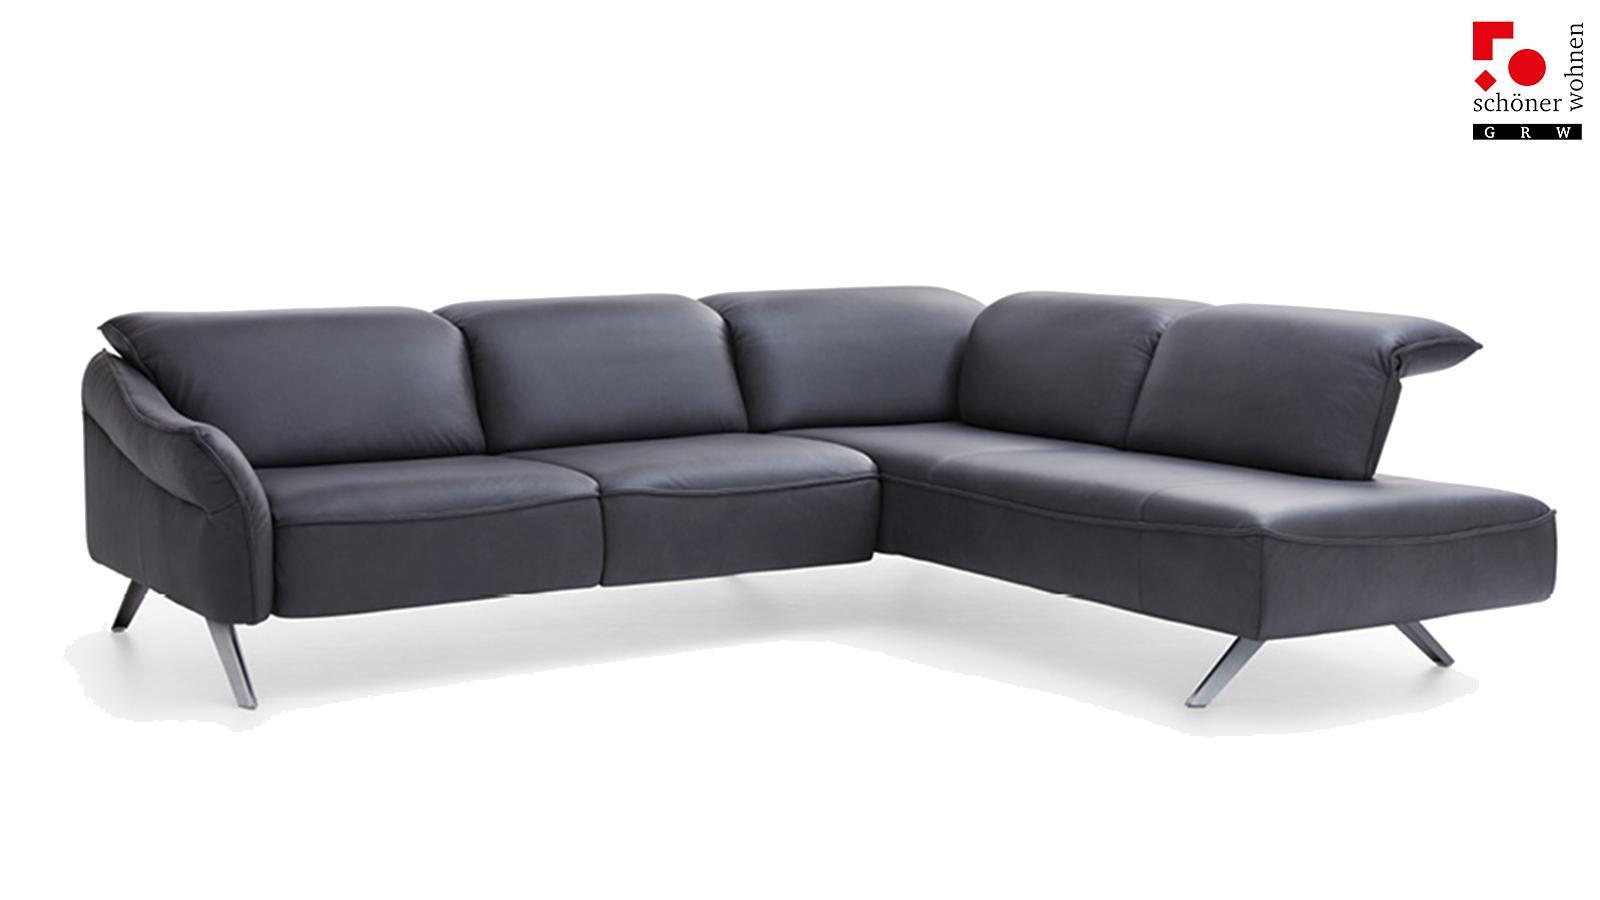 Contur Bormio Couch details